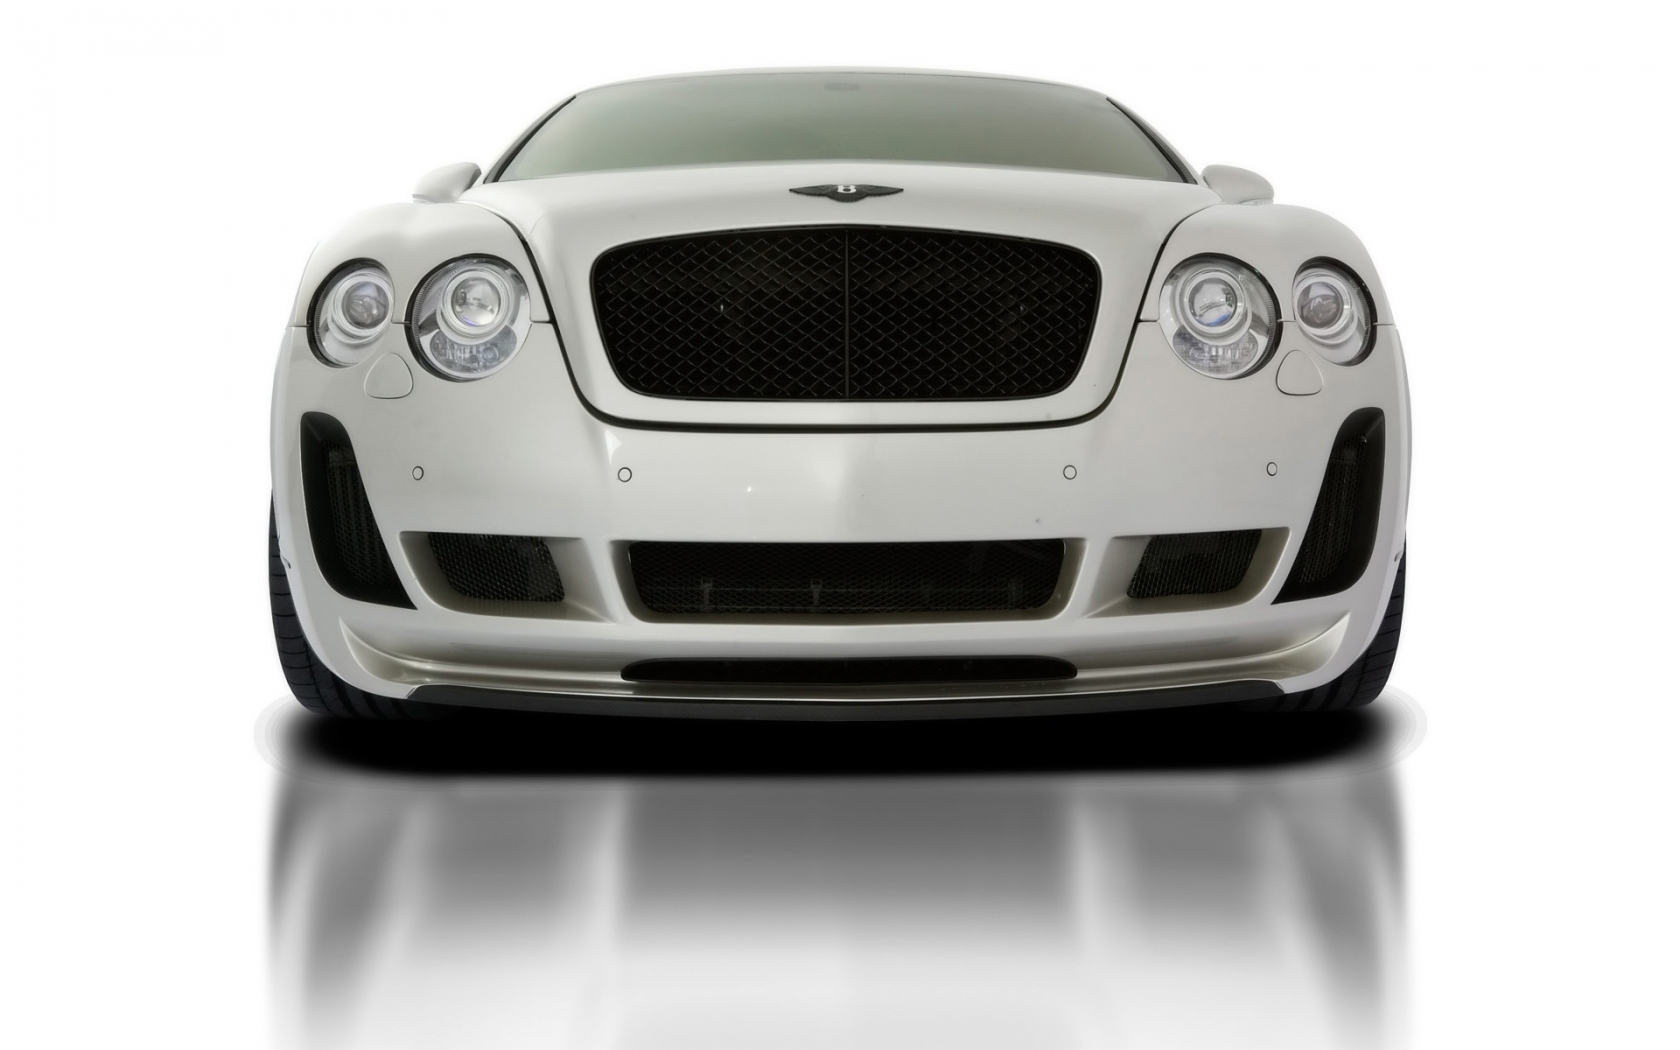 2010 Vorsteiner Bentley Continental GT BR9 Edition for 1680 x 1050 widescreen resolution